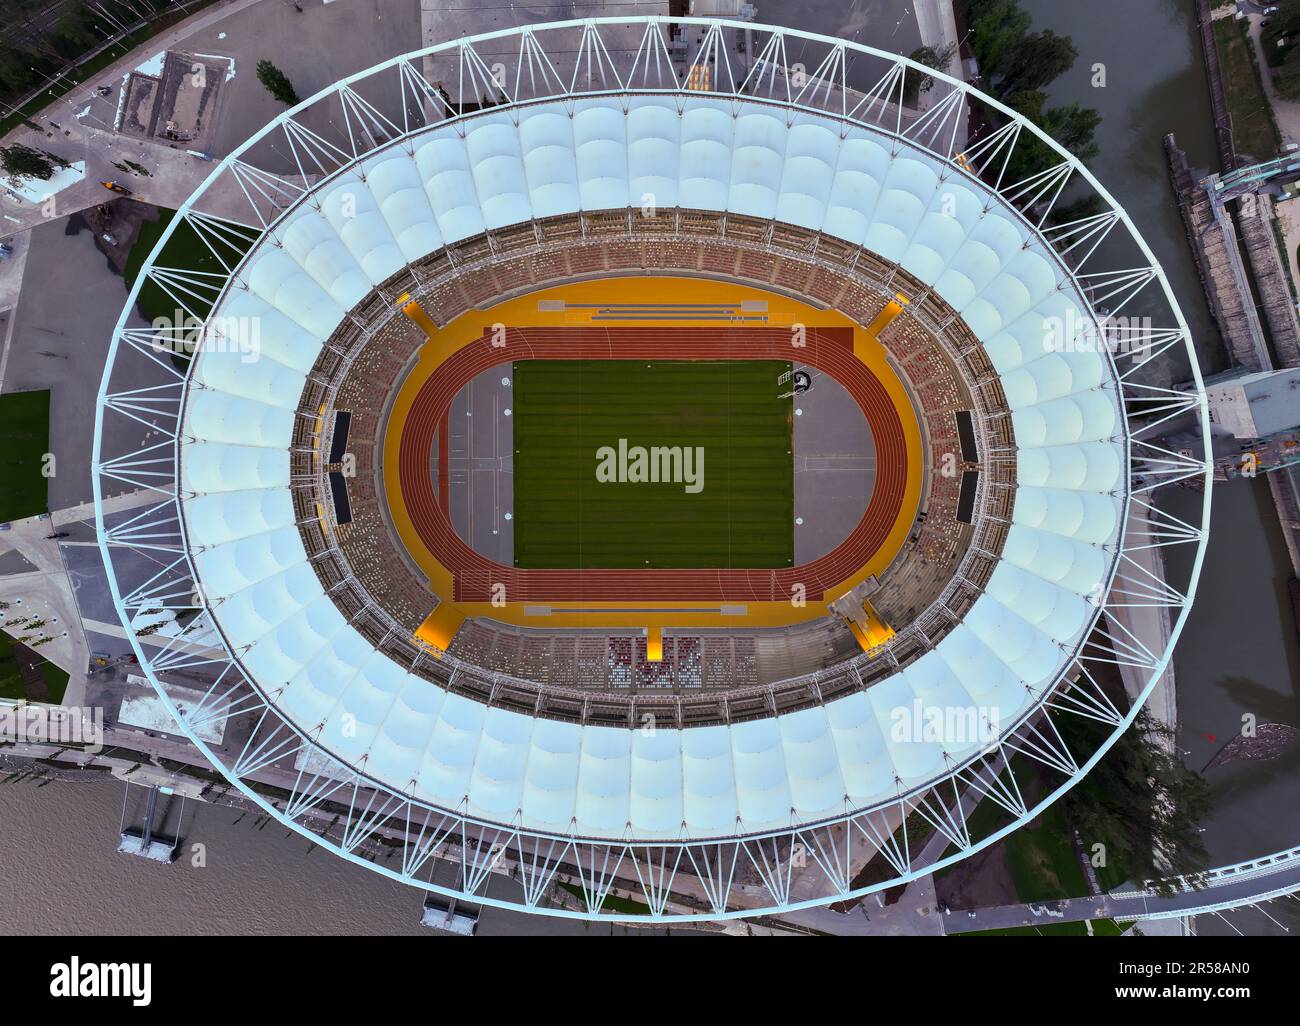 Sportstadion in Budapest, Ungarn. Die Leichtathletik-Weltmeisterschaft 2023 wird hier voraussichtlich stattfinden. Luftfoto vom ganzen Stadion. Stockfoto